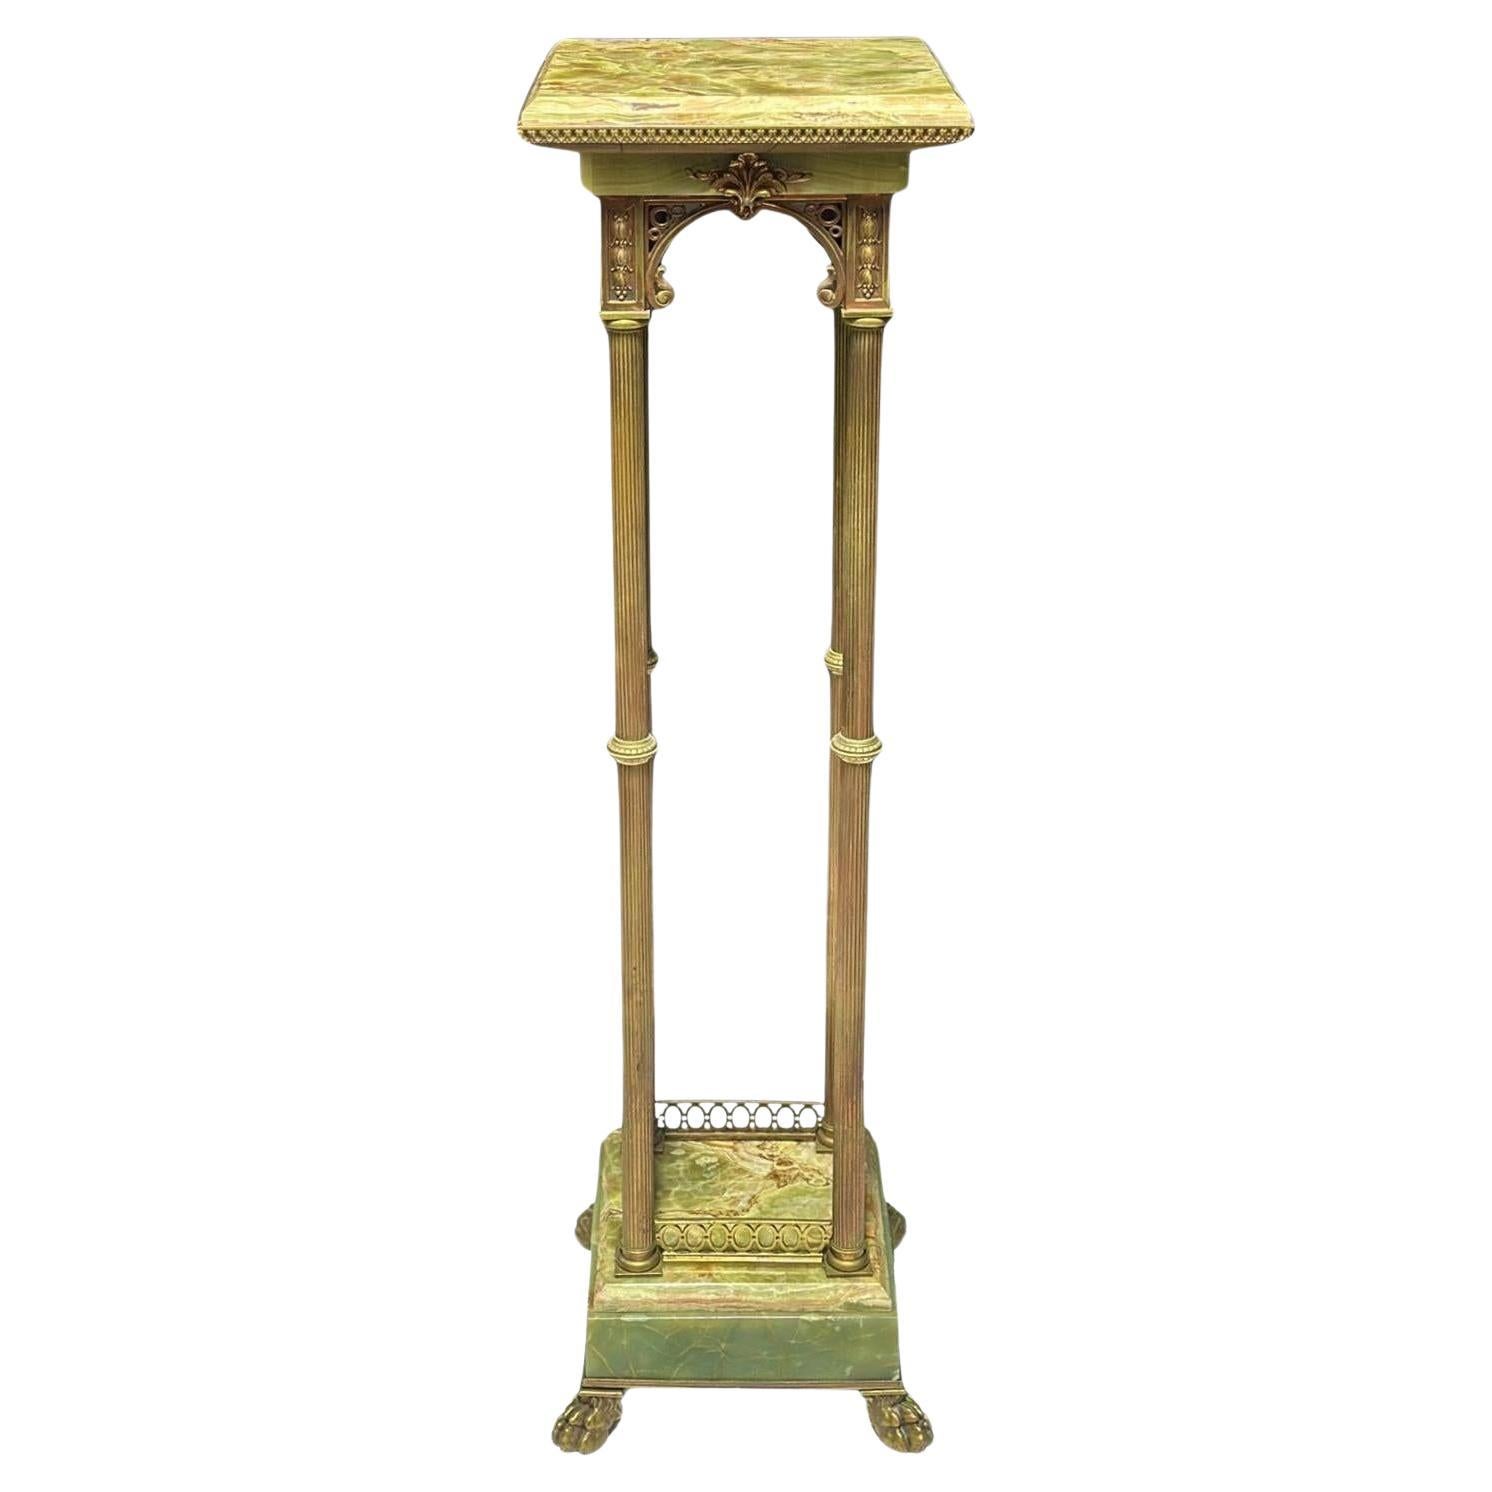 The Pedestal en bronze et onyx français de la fin du 19e siècle